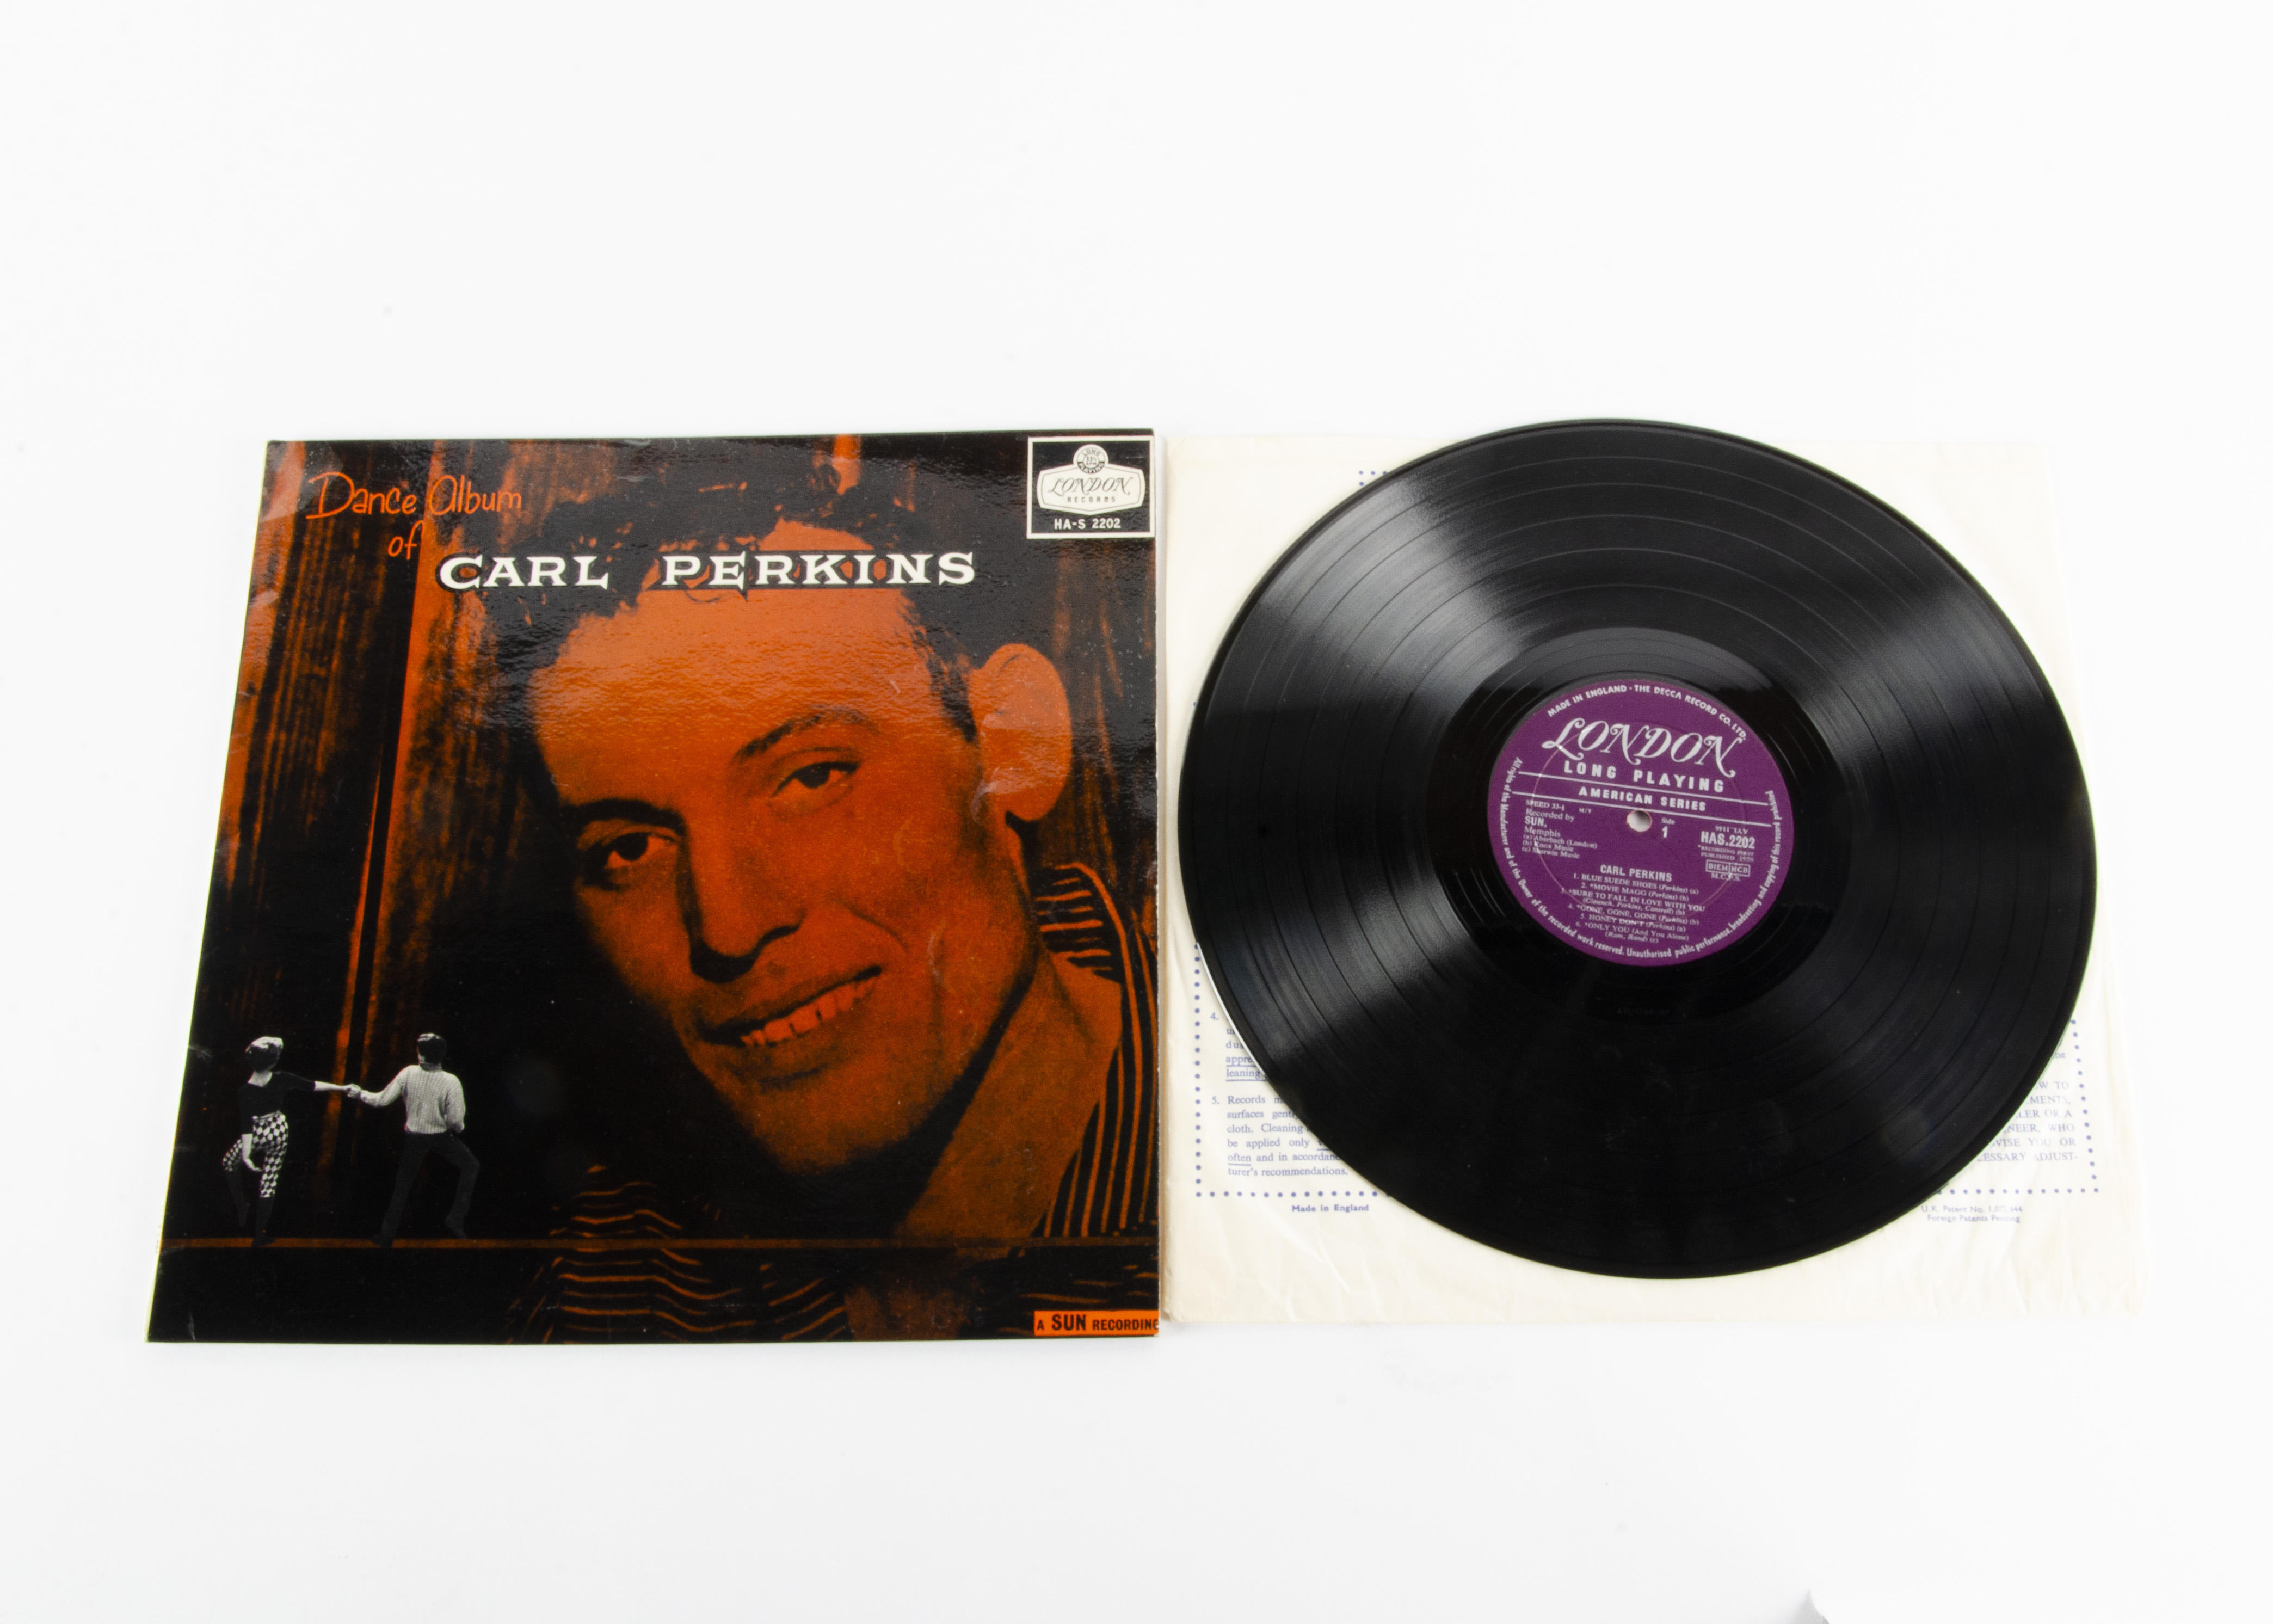 Carl Perkins LP, Dance Album of Carl Perkins LP - Original UK 1959 release on London (HA-S 2202) -